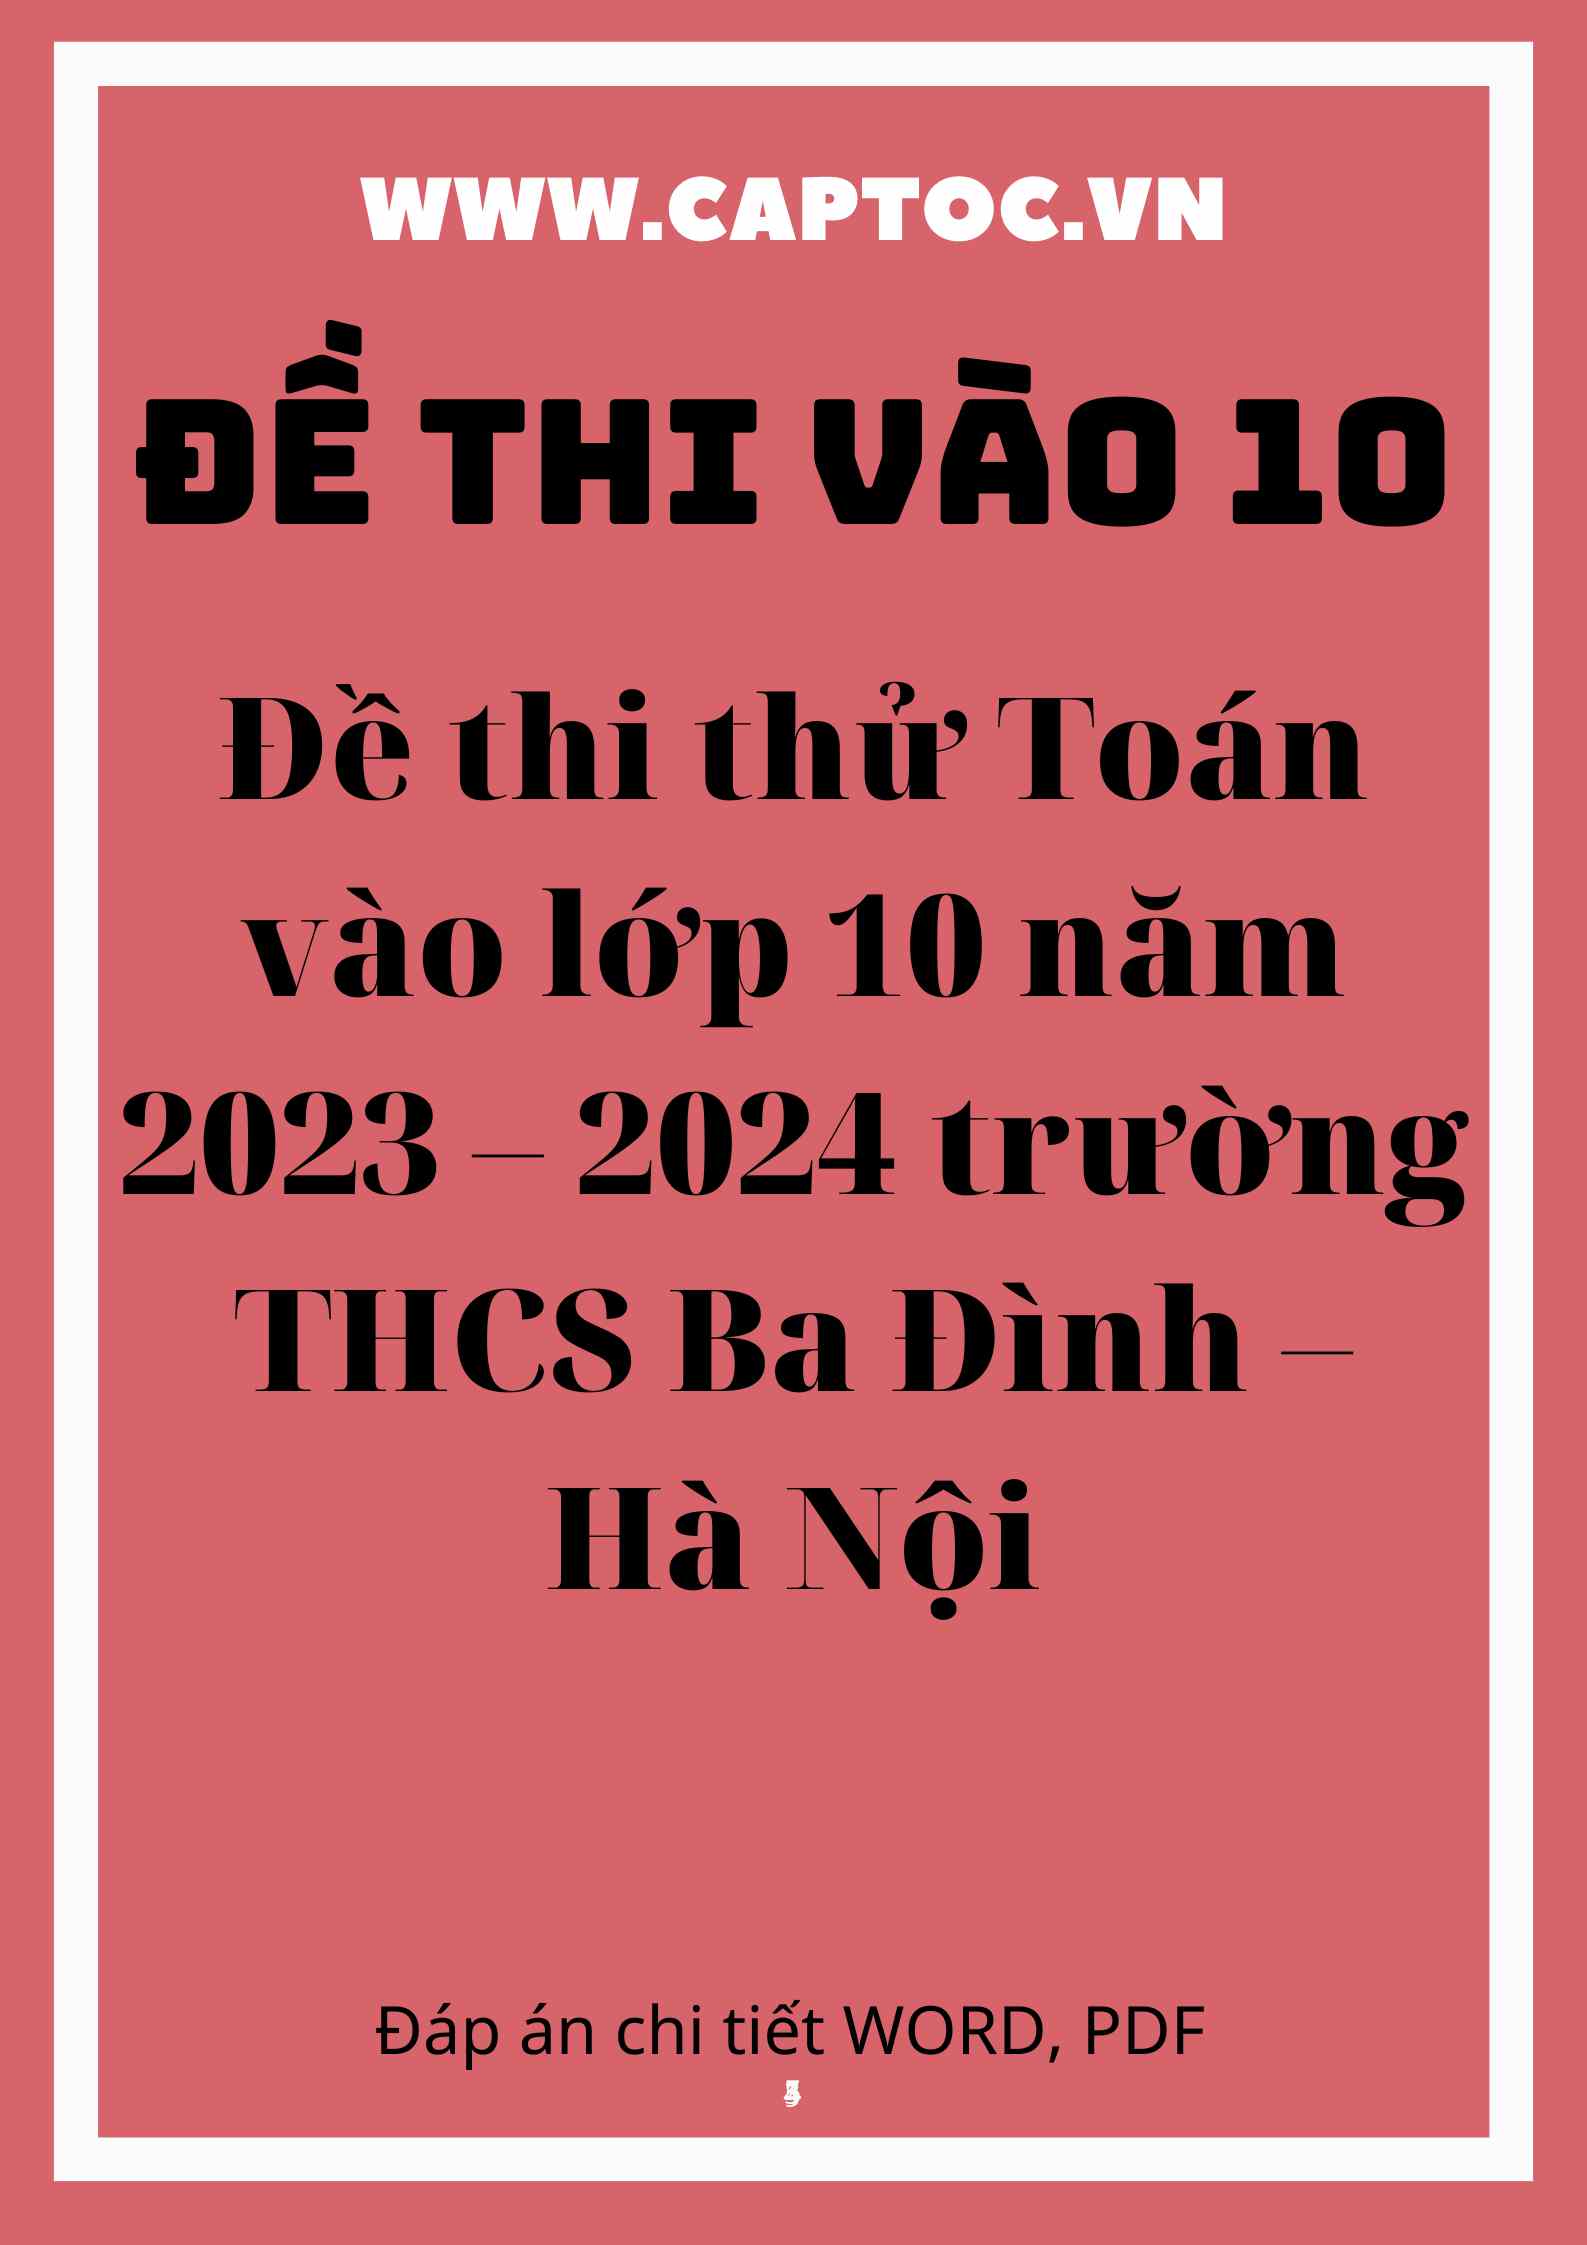 Đề thi thử Toán vào 10 năm 2023 – 2024 trường THCS Nguyễn Hữu Thái – Hà Tĩnh